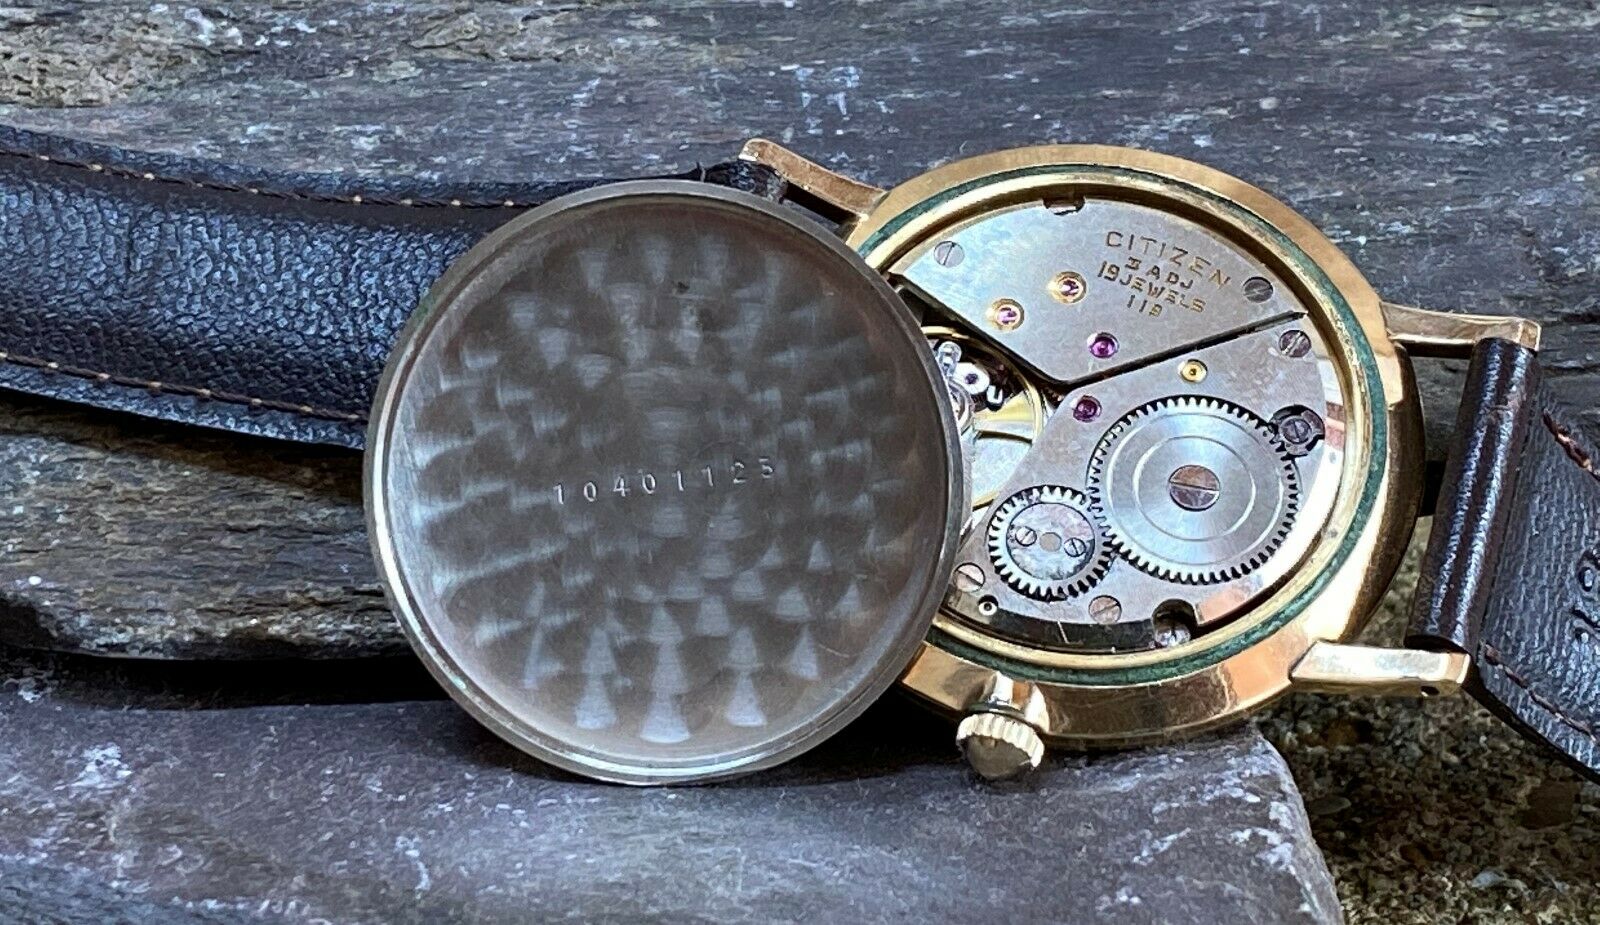 Citizen Deluxe' vintage watch. 19 Jewel - 3 ADJ -Parashock